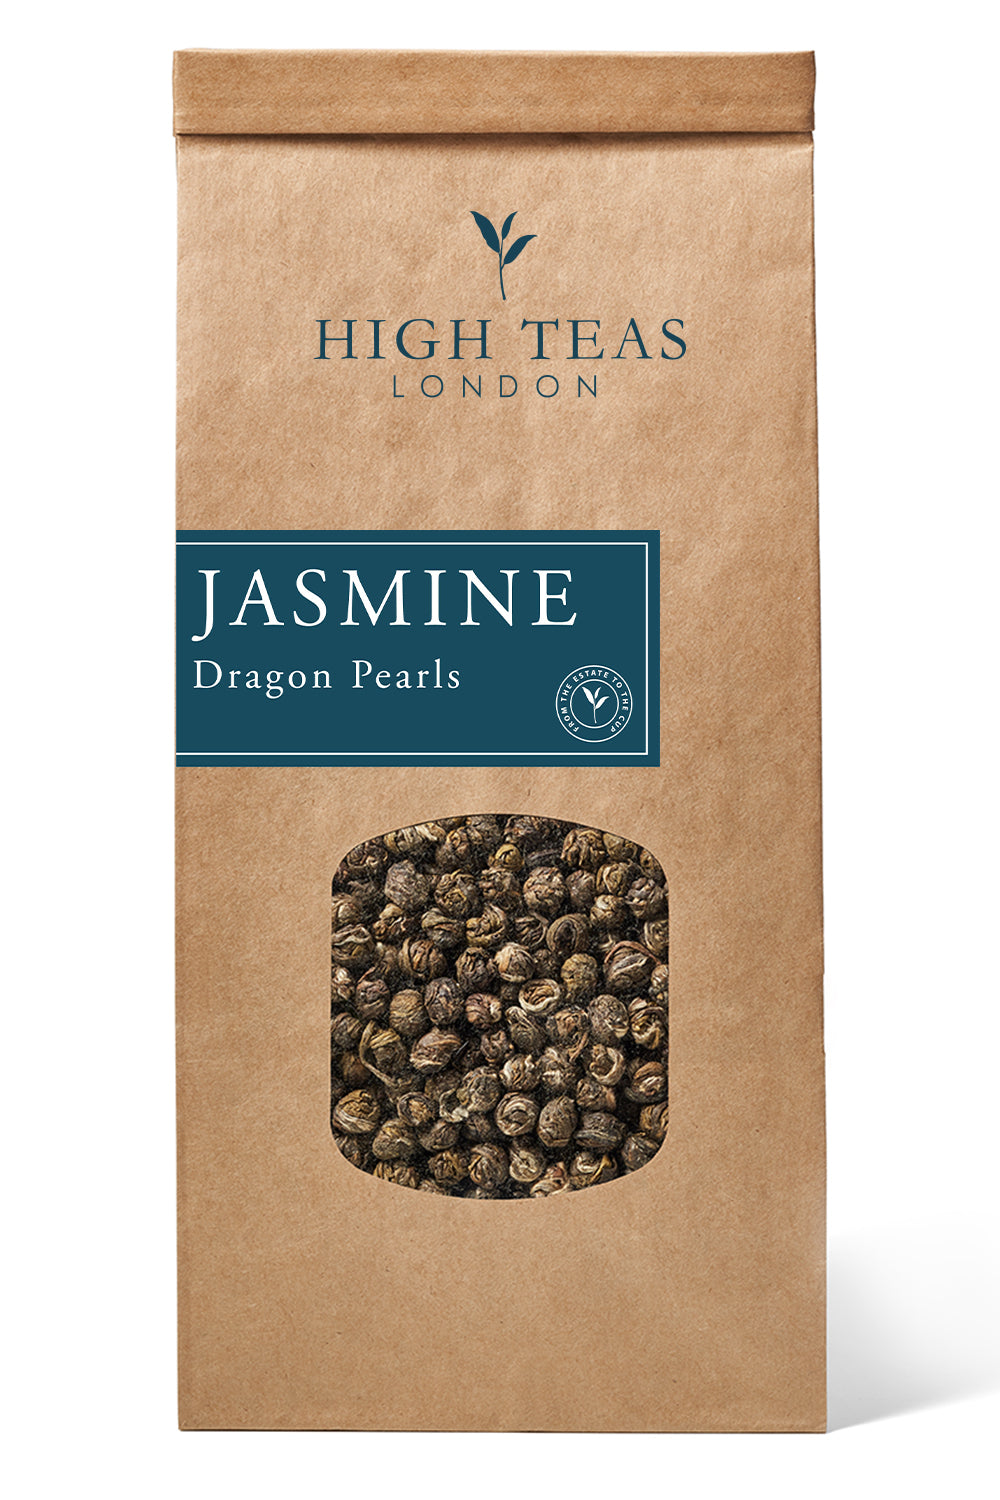 Jasmine Dragon Pearls-250g-Loose Leaf Tea-High Teas